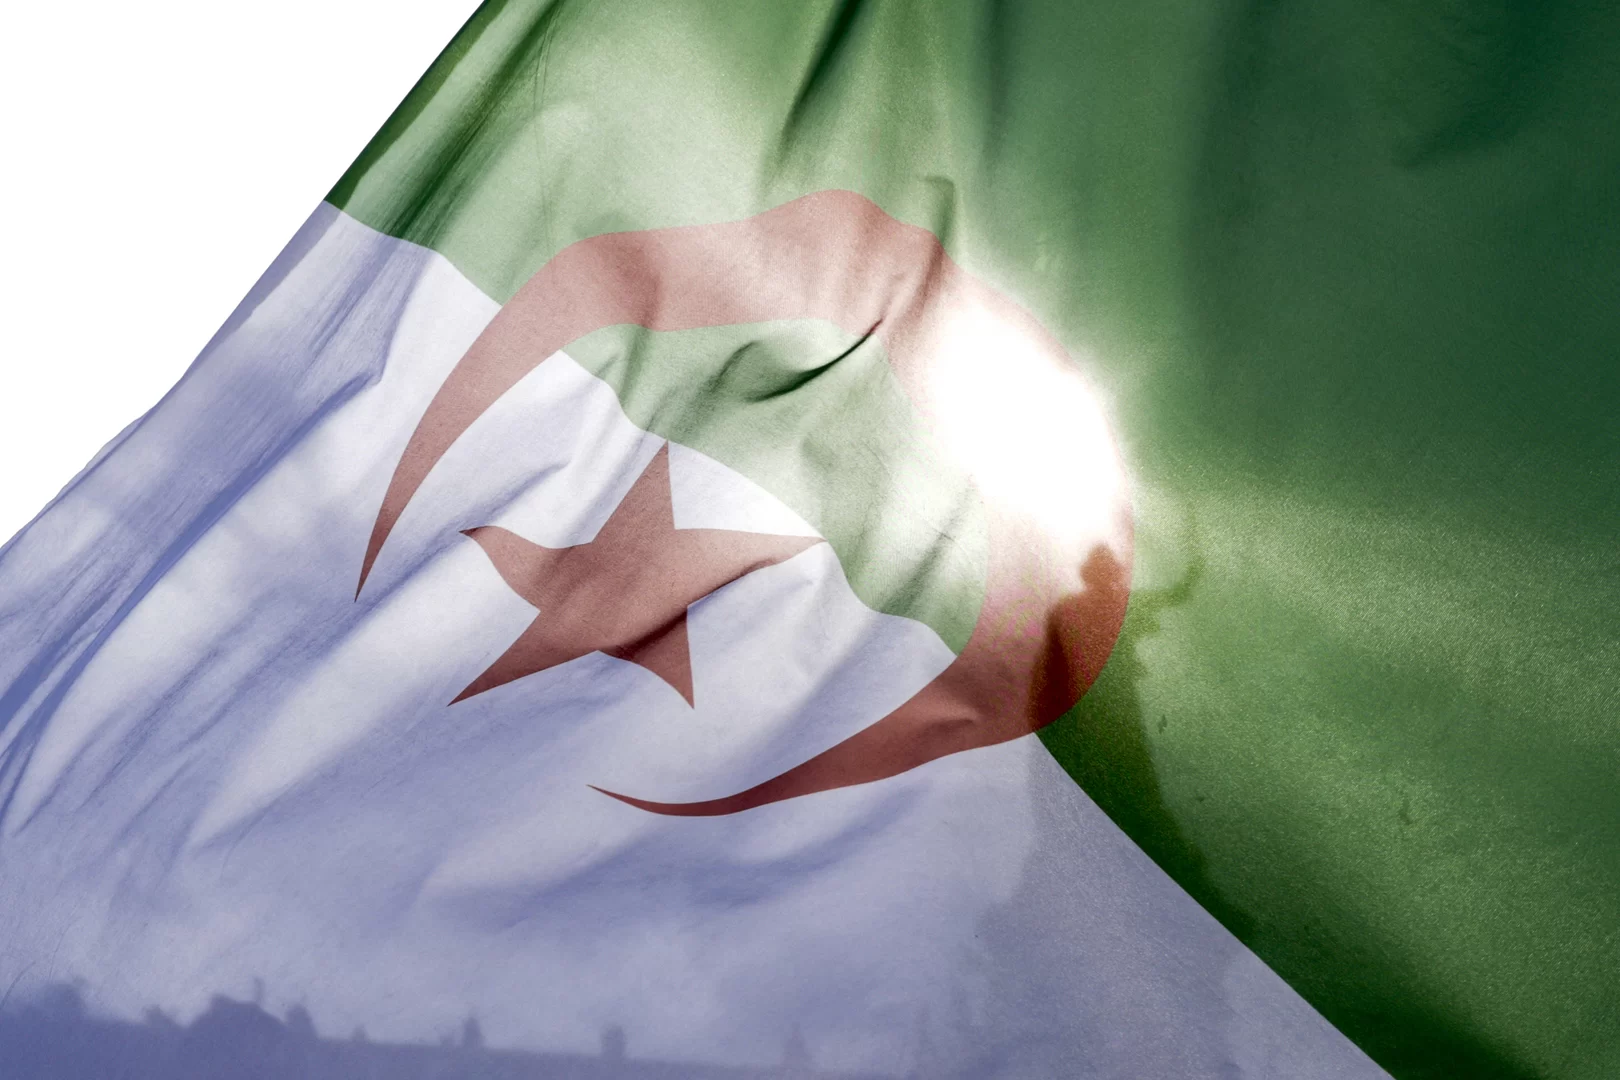 إعلان الجزائر: القمة العربية تؤكد على مركزية القضية الفلسطينية والدعم المطلق لحقوق الشعب الفلسطيني